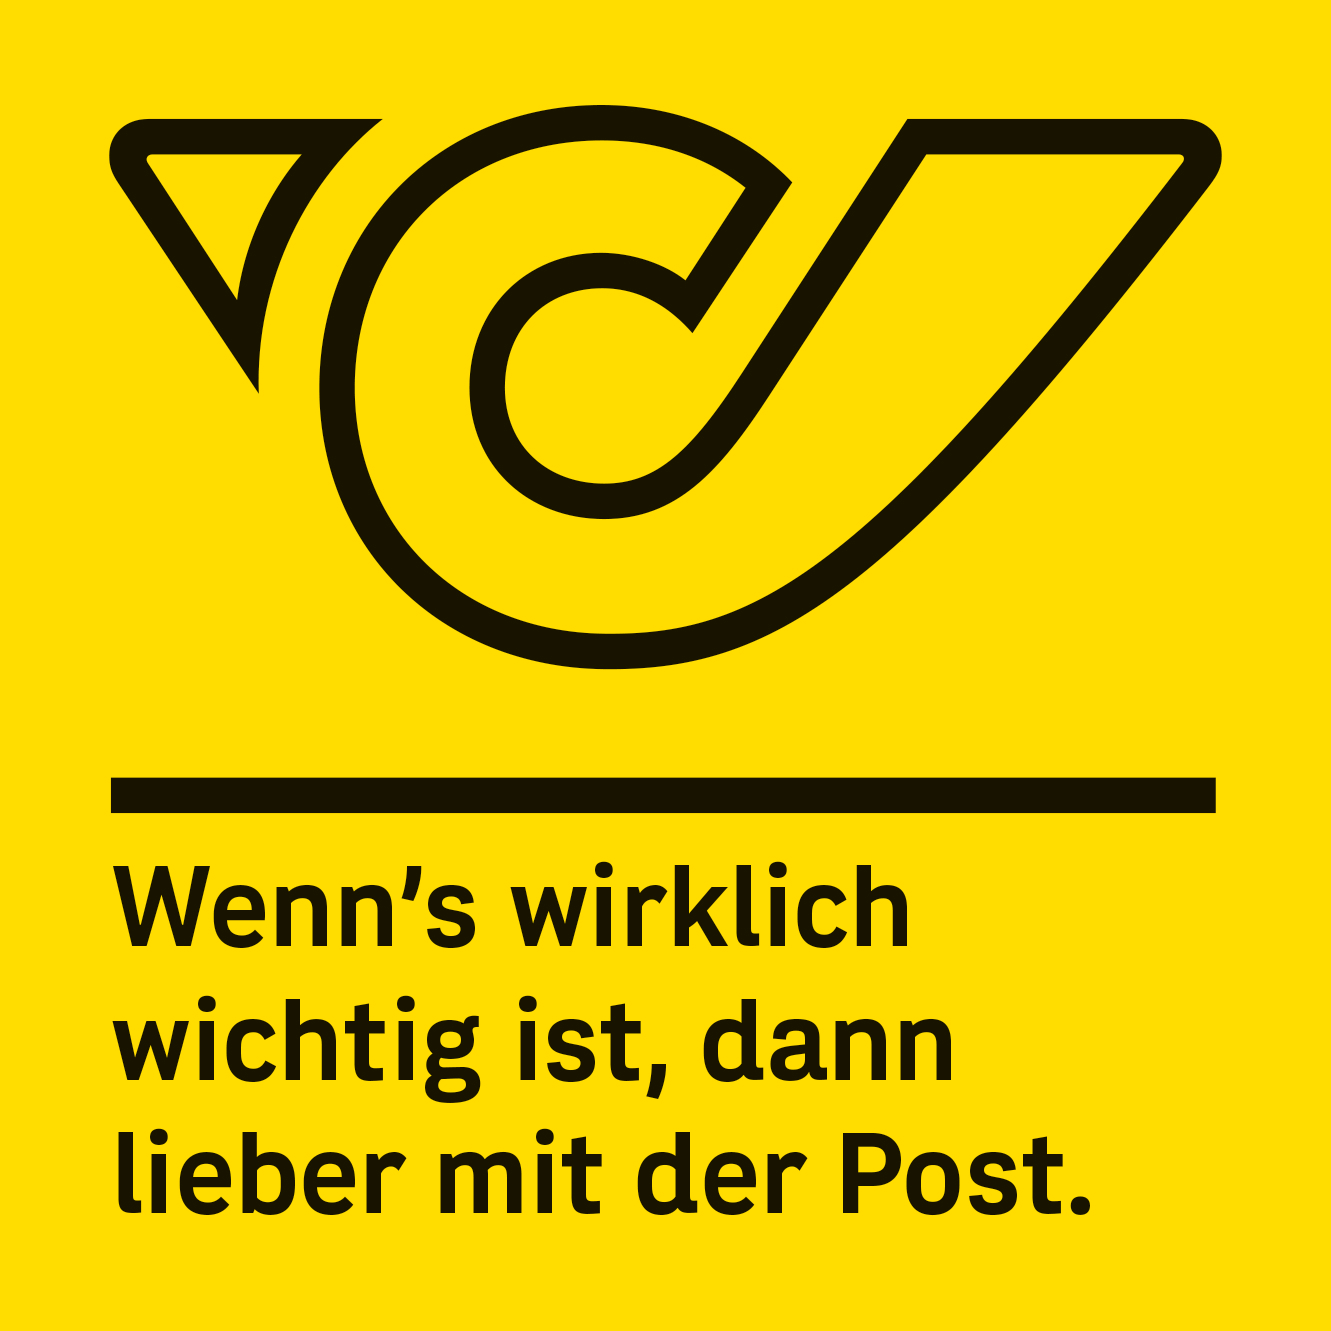 奥地利邮政 Österreichische Post启用新LOGO